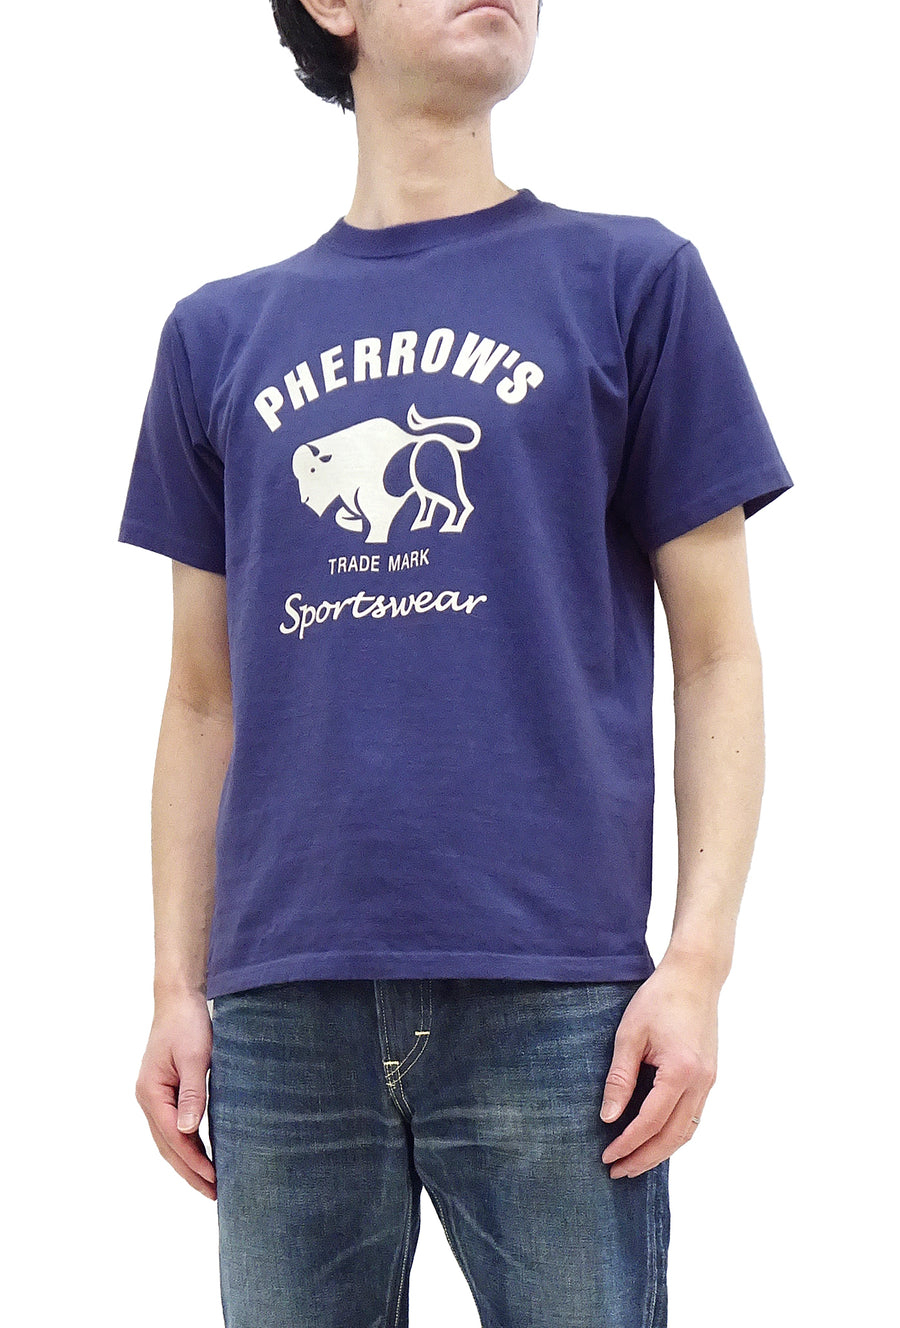 Pherrow's T-Shirt Men's Loopwheeled Short Sleeve Buffalo Graphic Tee Pherrows 23S-PT2 Faded-Dark-Blue